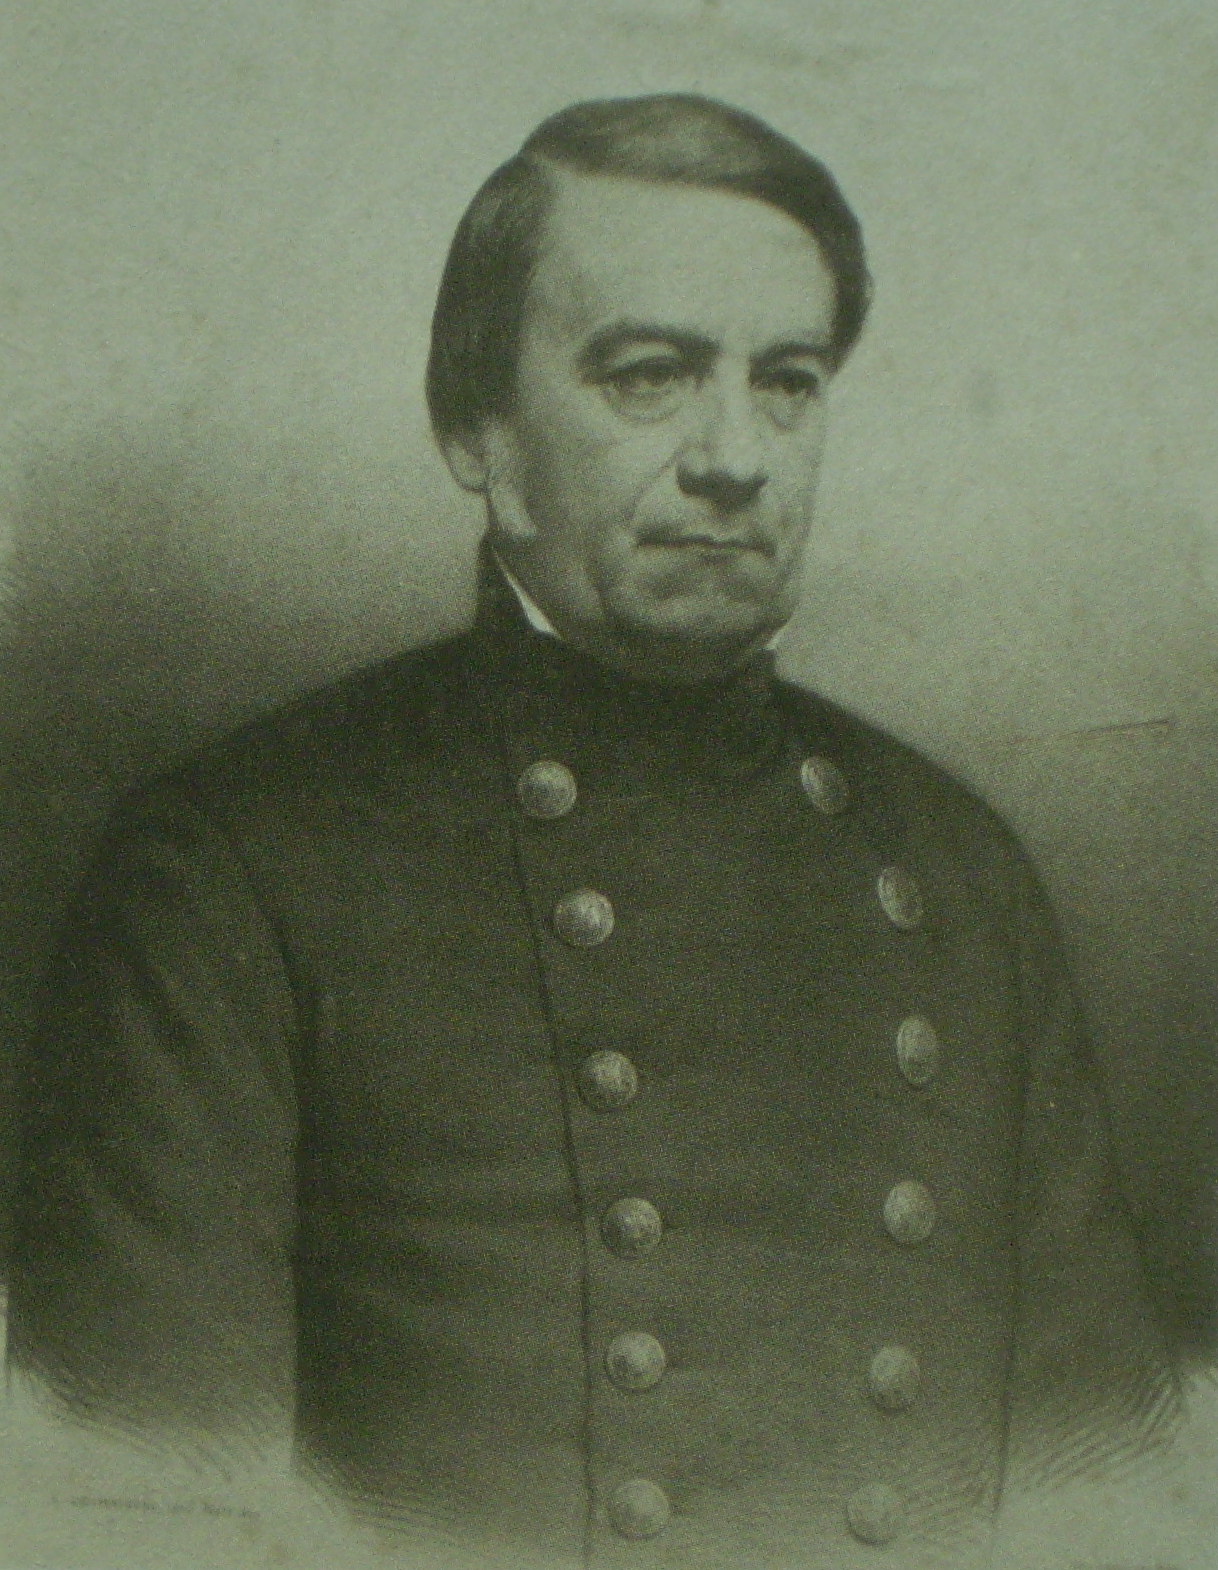 José María Paz